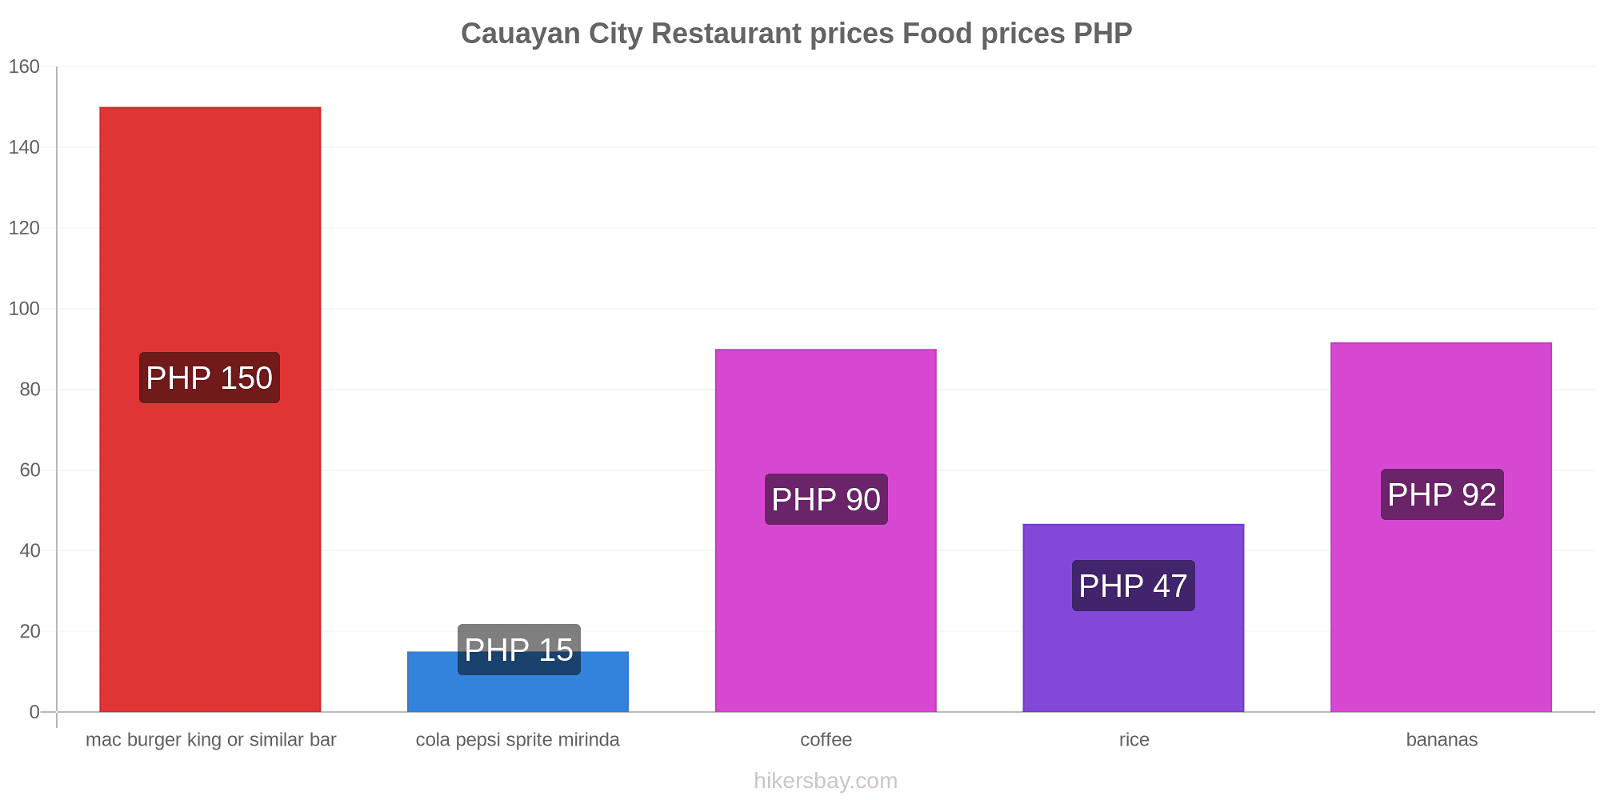 Cauayan City price changes hikersbay.com